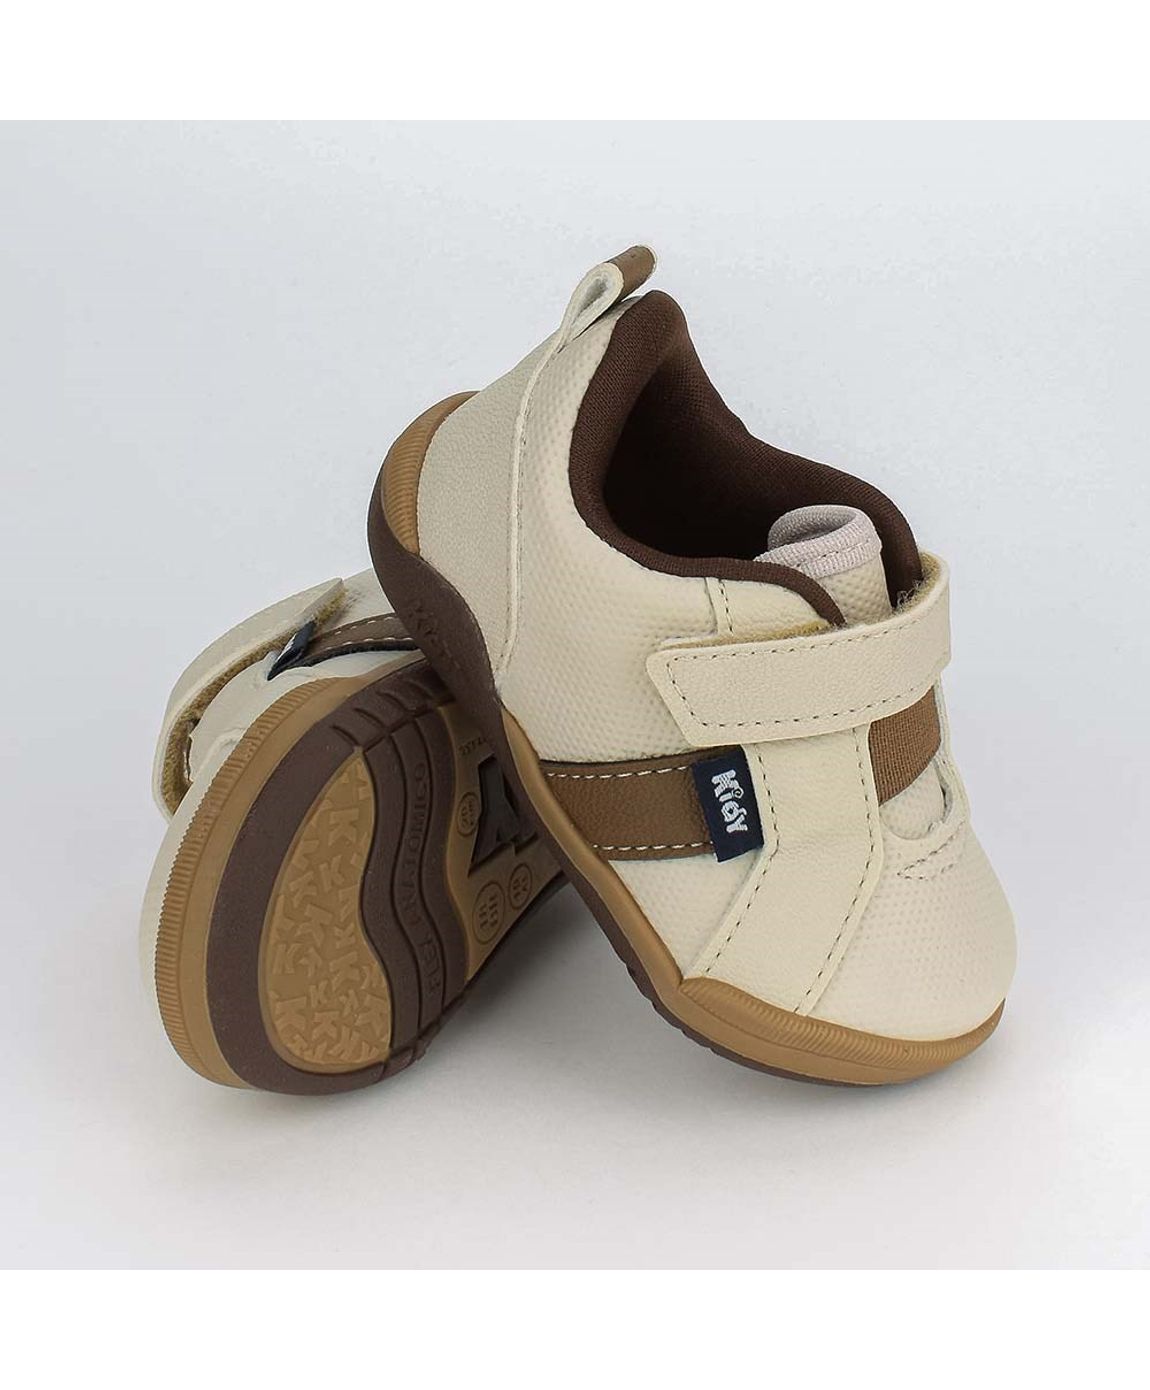 Sapato Bebê Masculino Kidy Colors Casual Bege e Caramelo - Brandili